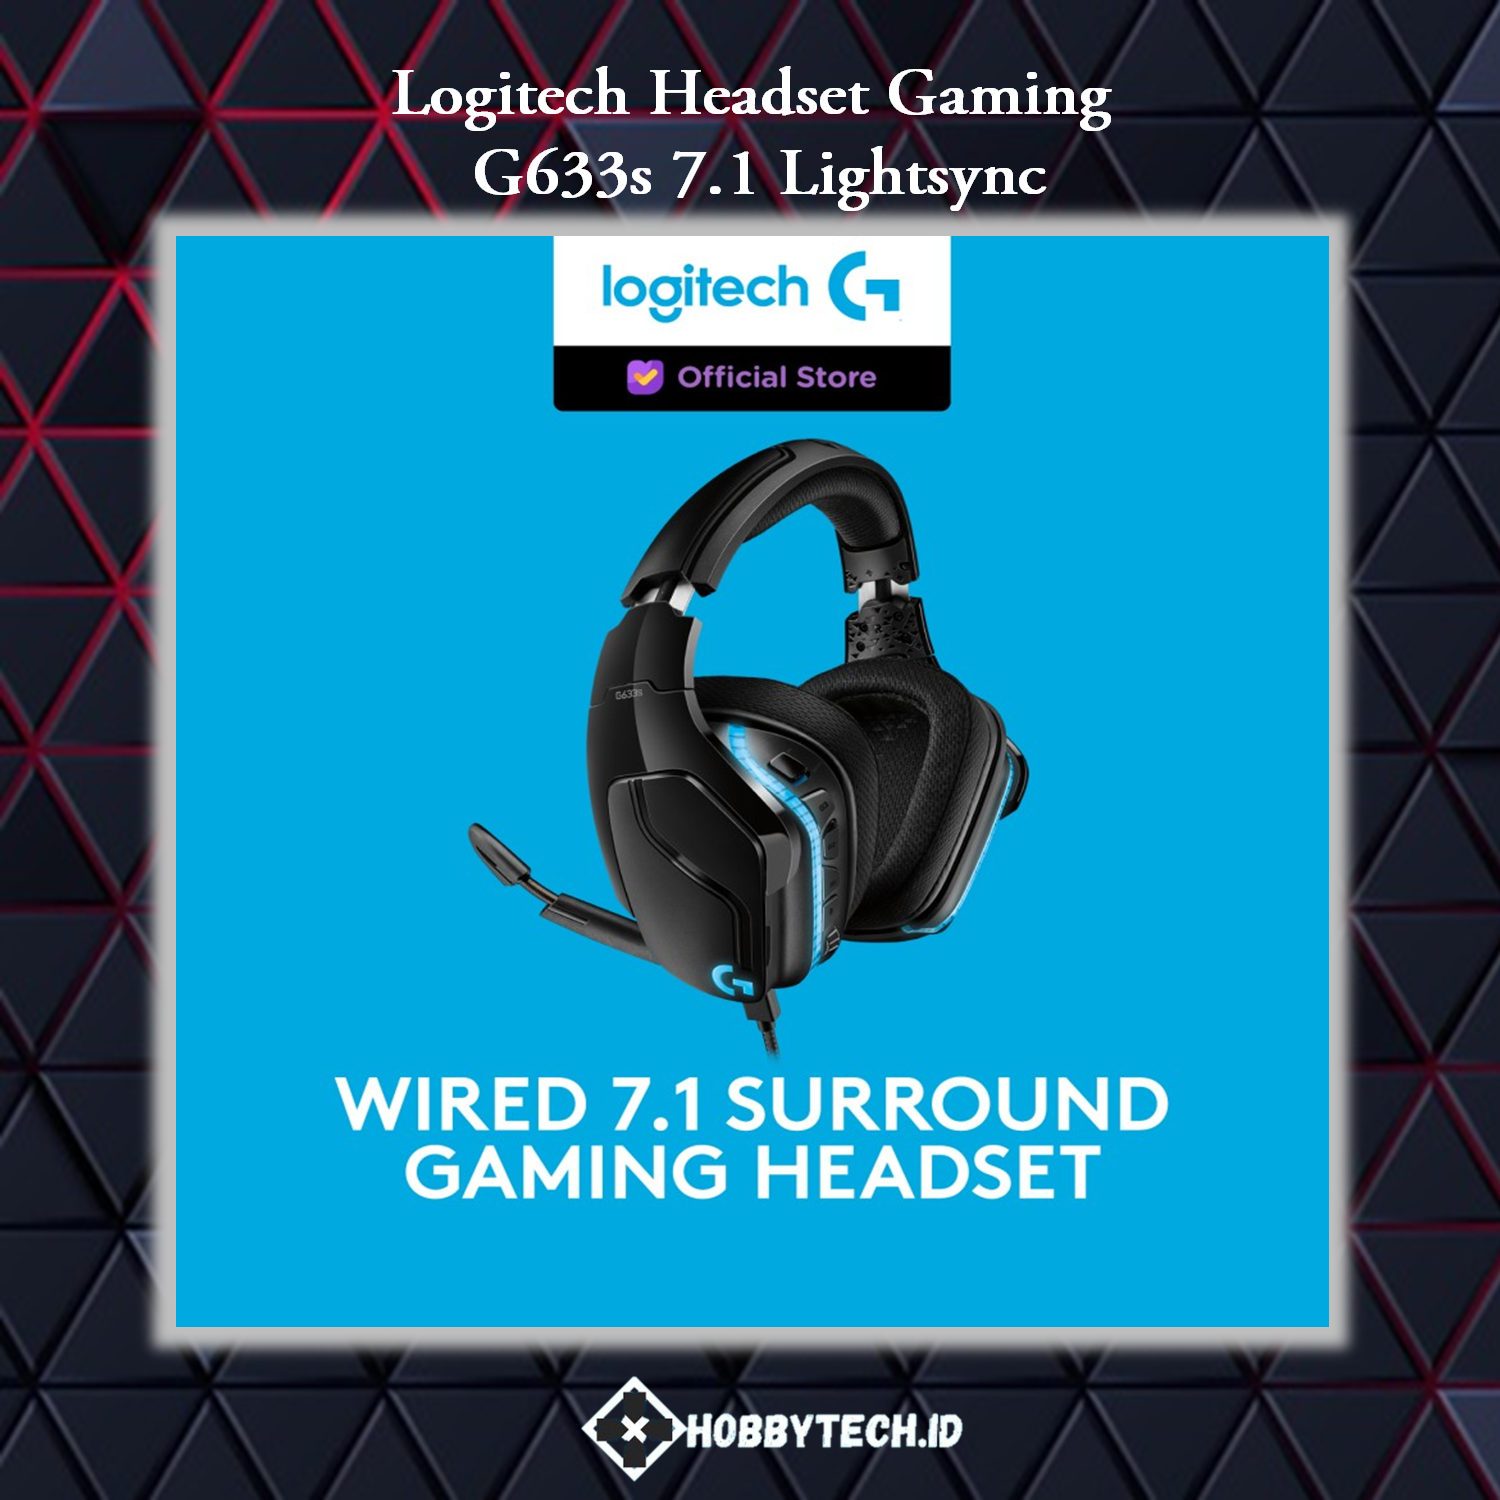 Logitech-G G633s 7.1 LIGHTSYNC Gaming Headset